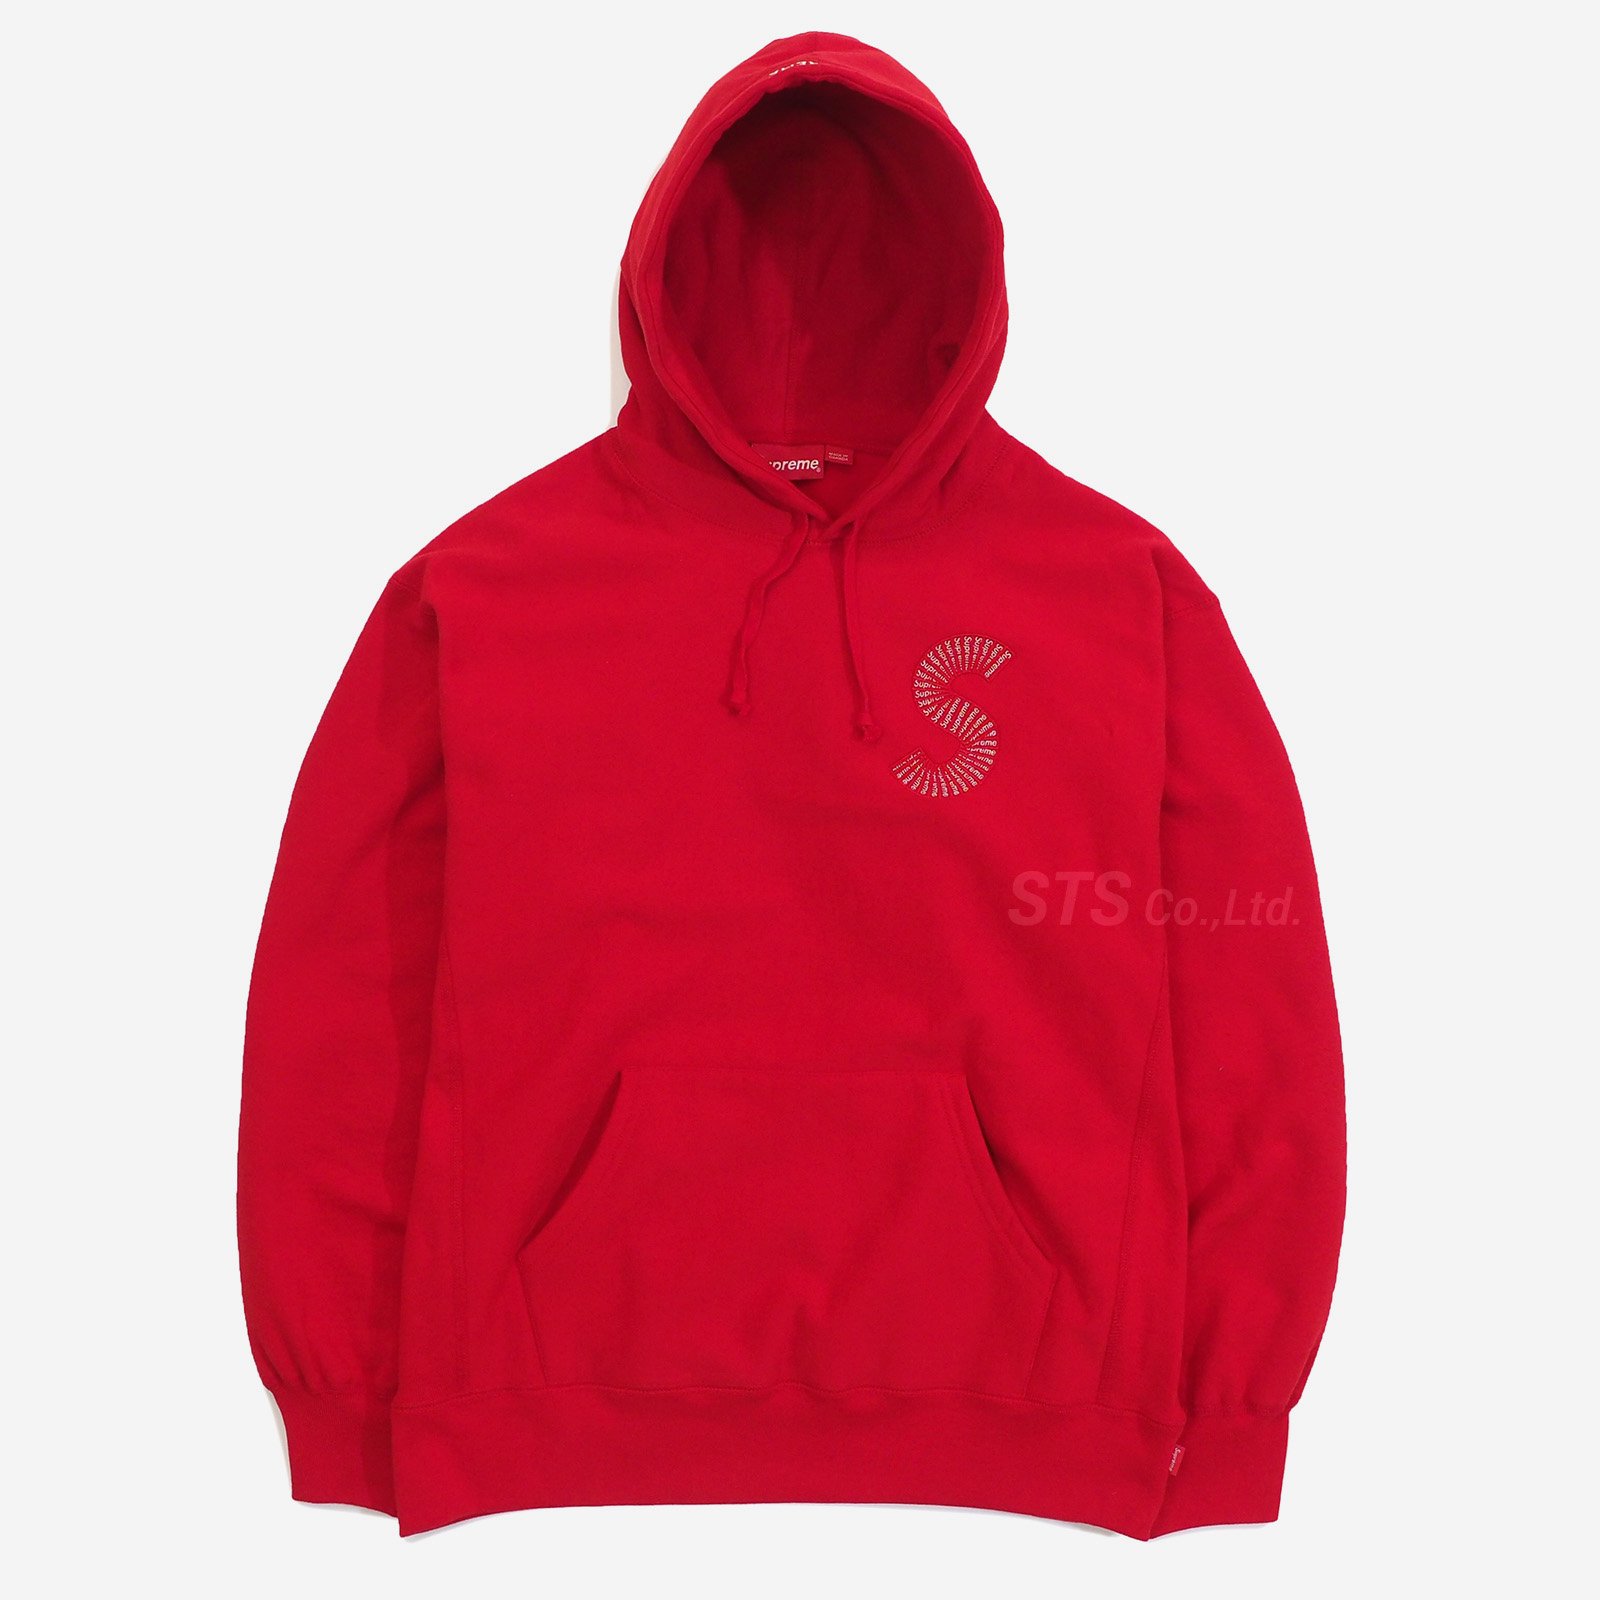 Supreme - S Logo Hooded Sweatshirt - UG.SHAFT